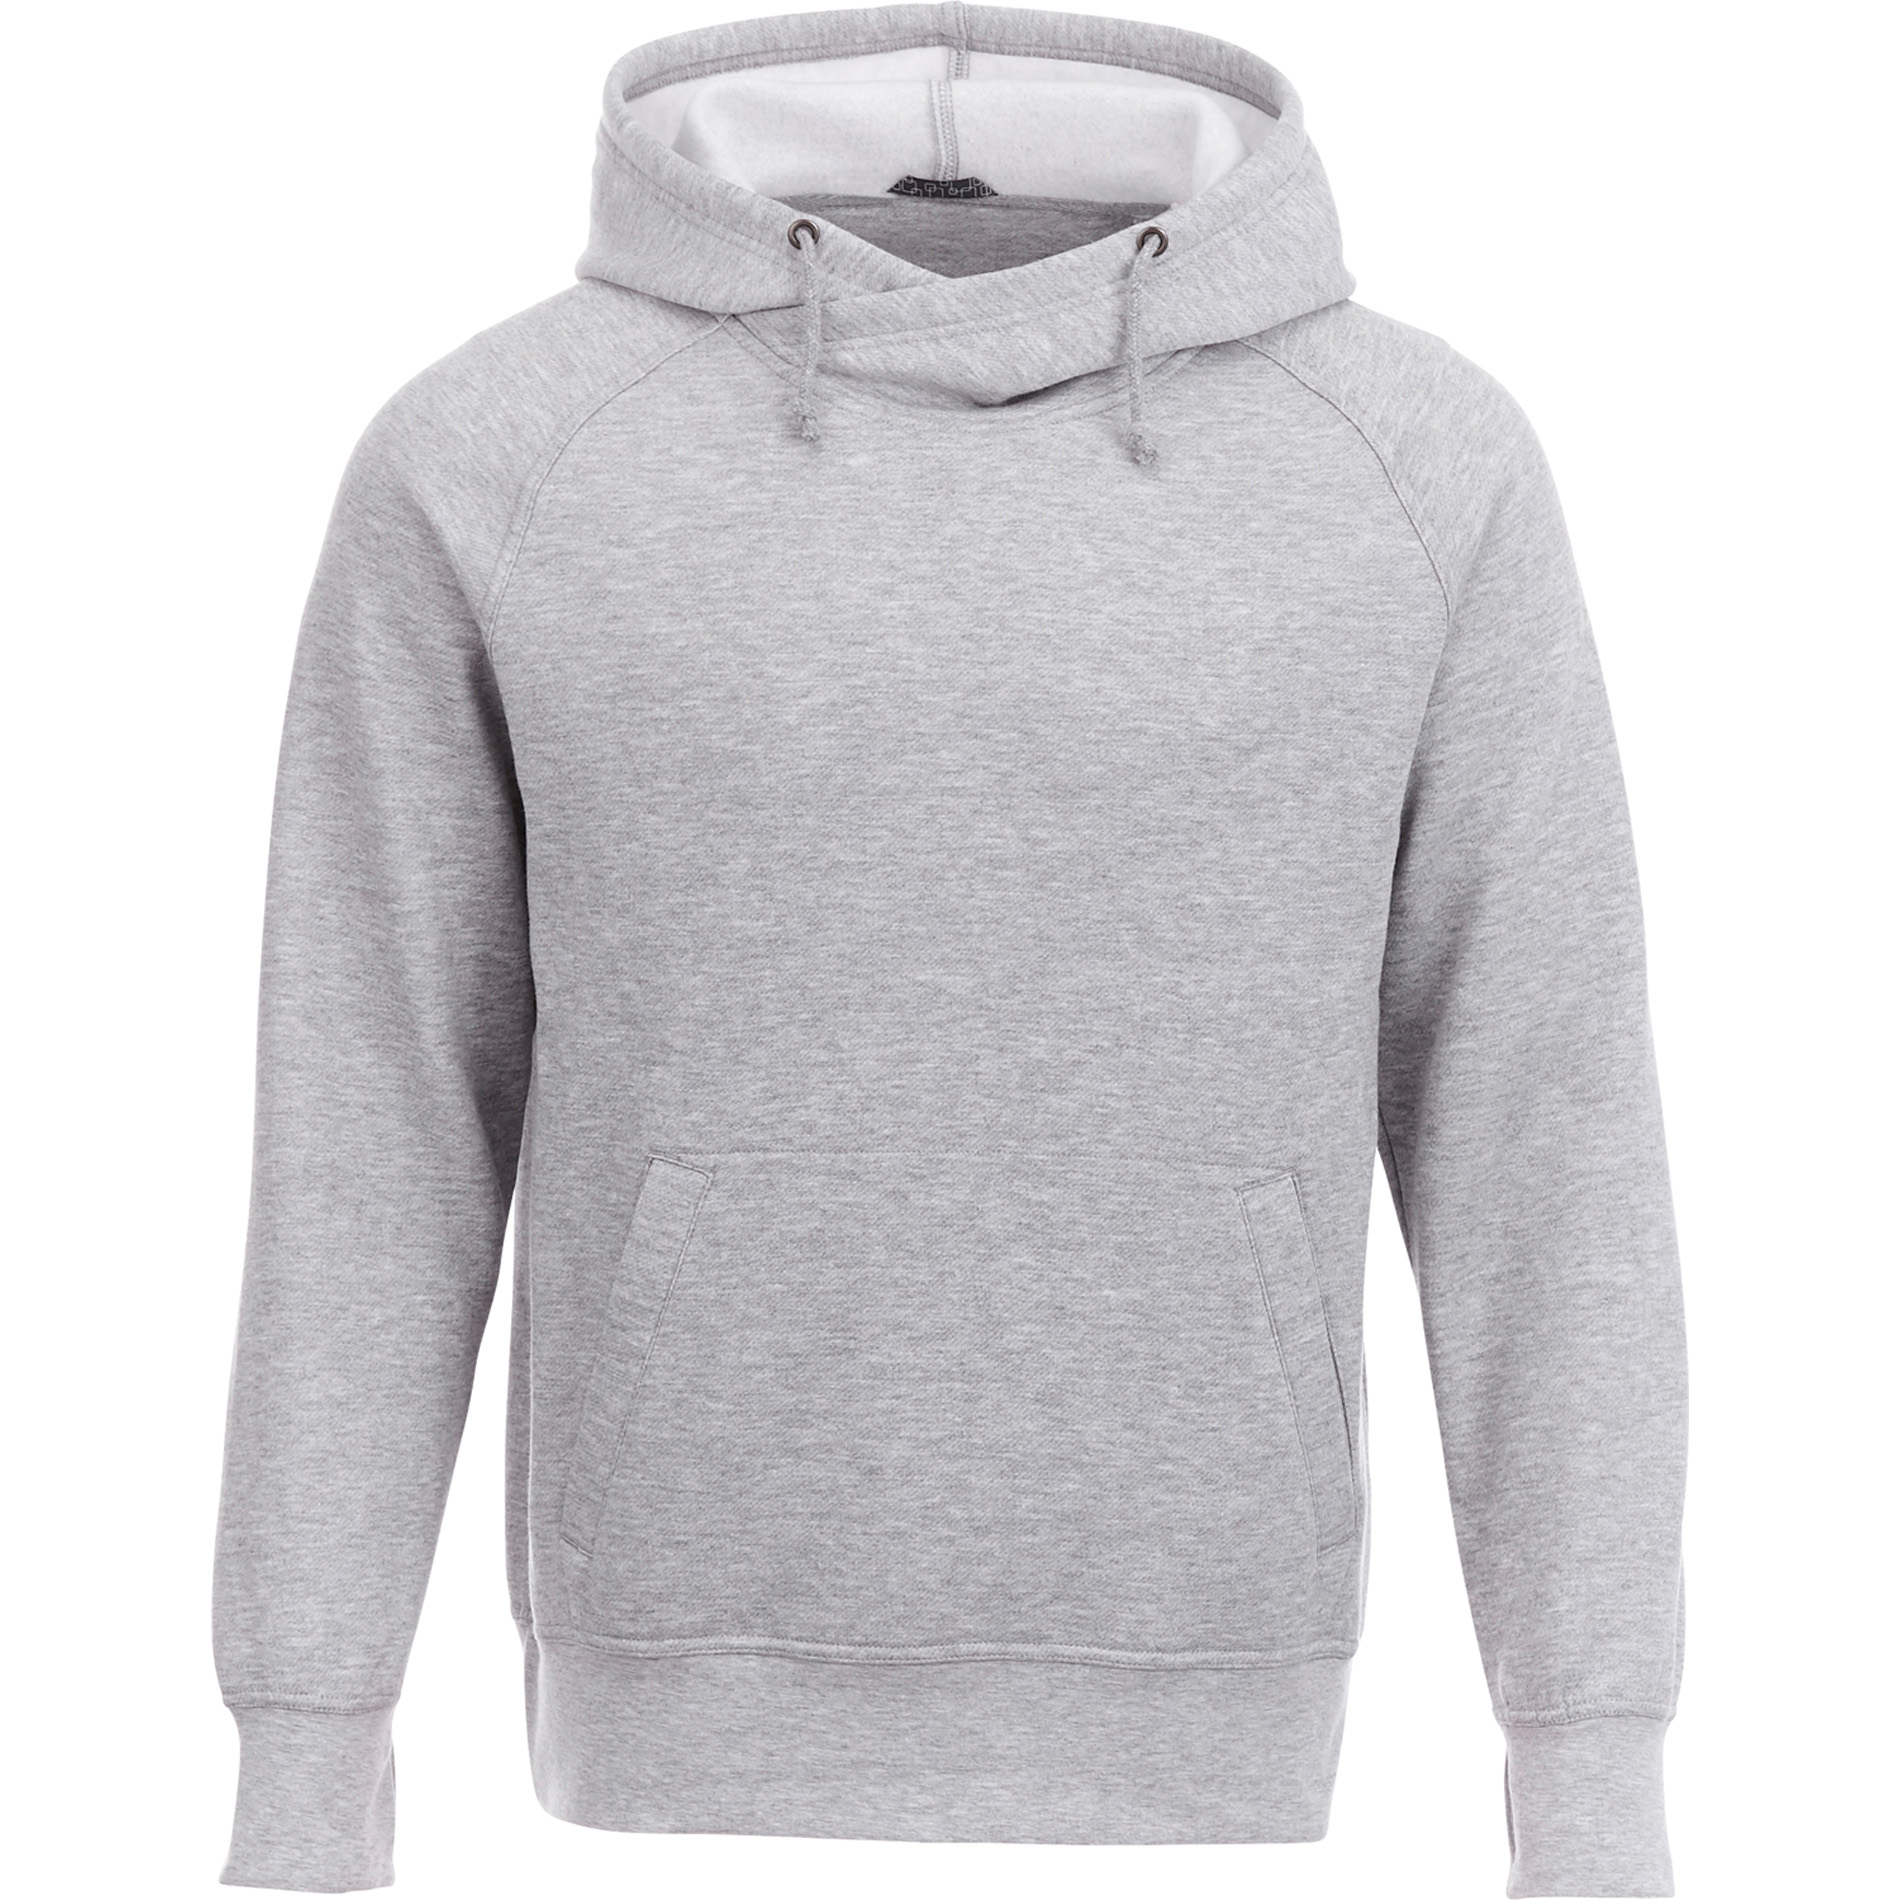 Trimark TM18209 - Men's DAYTON Fleece Hoodie $23.40 - Sweatshirts